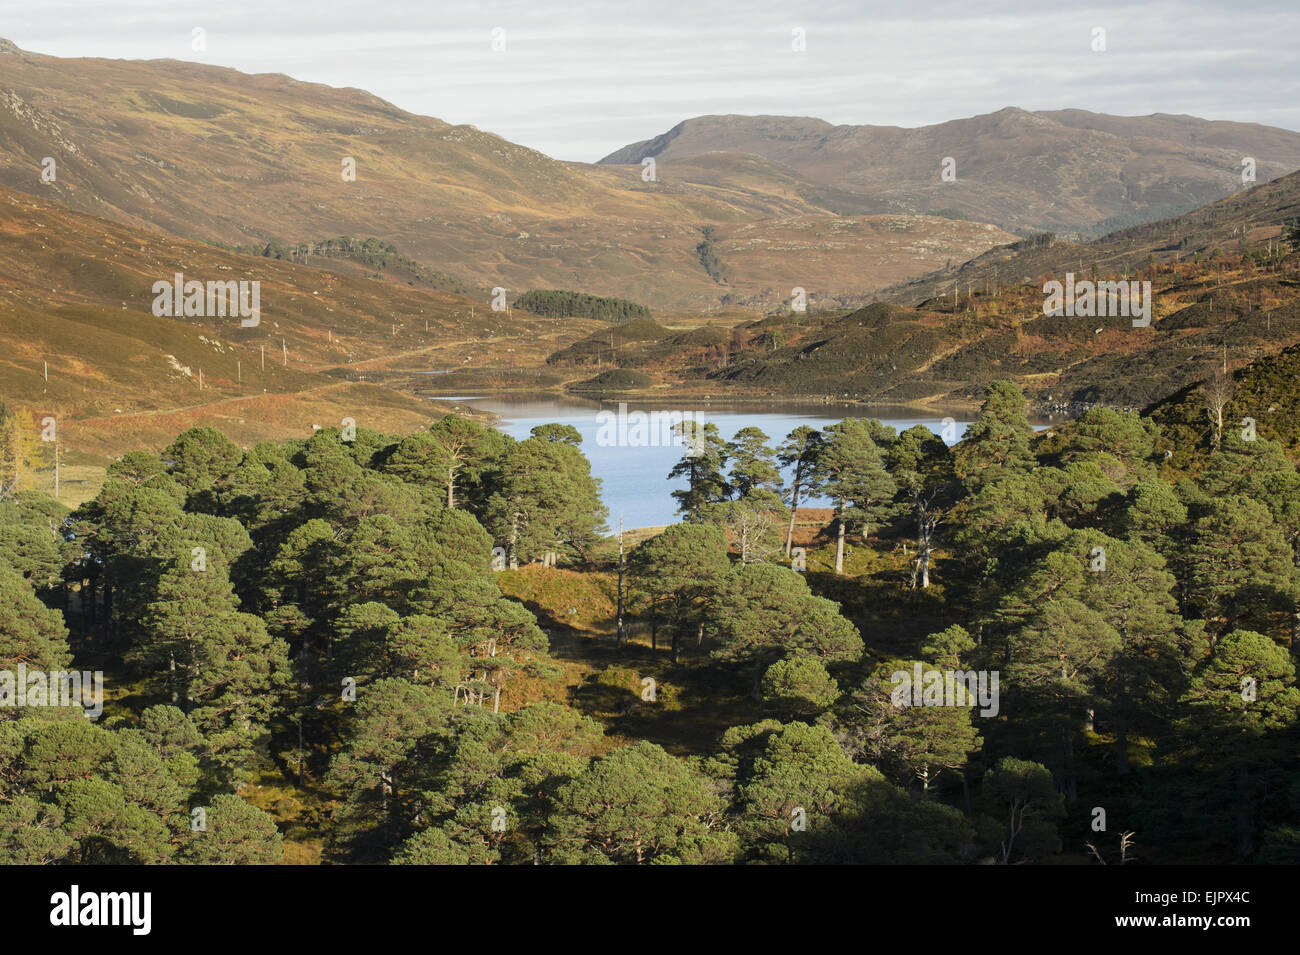 Pino silvestre (Pinus sylvestris) remanente de bosque, con las deforestadas colinas en el fondo, Glen Cannich, Inverness-shire, Highlands, Escocia, Noviembre Foto de stock